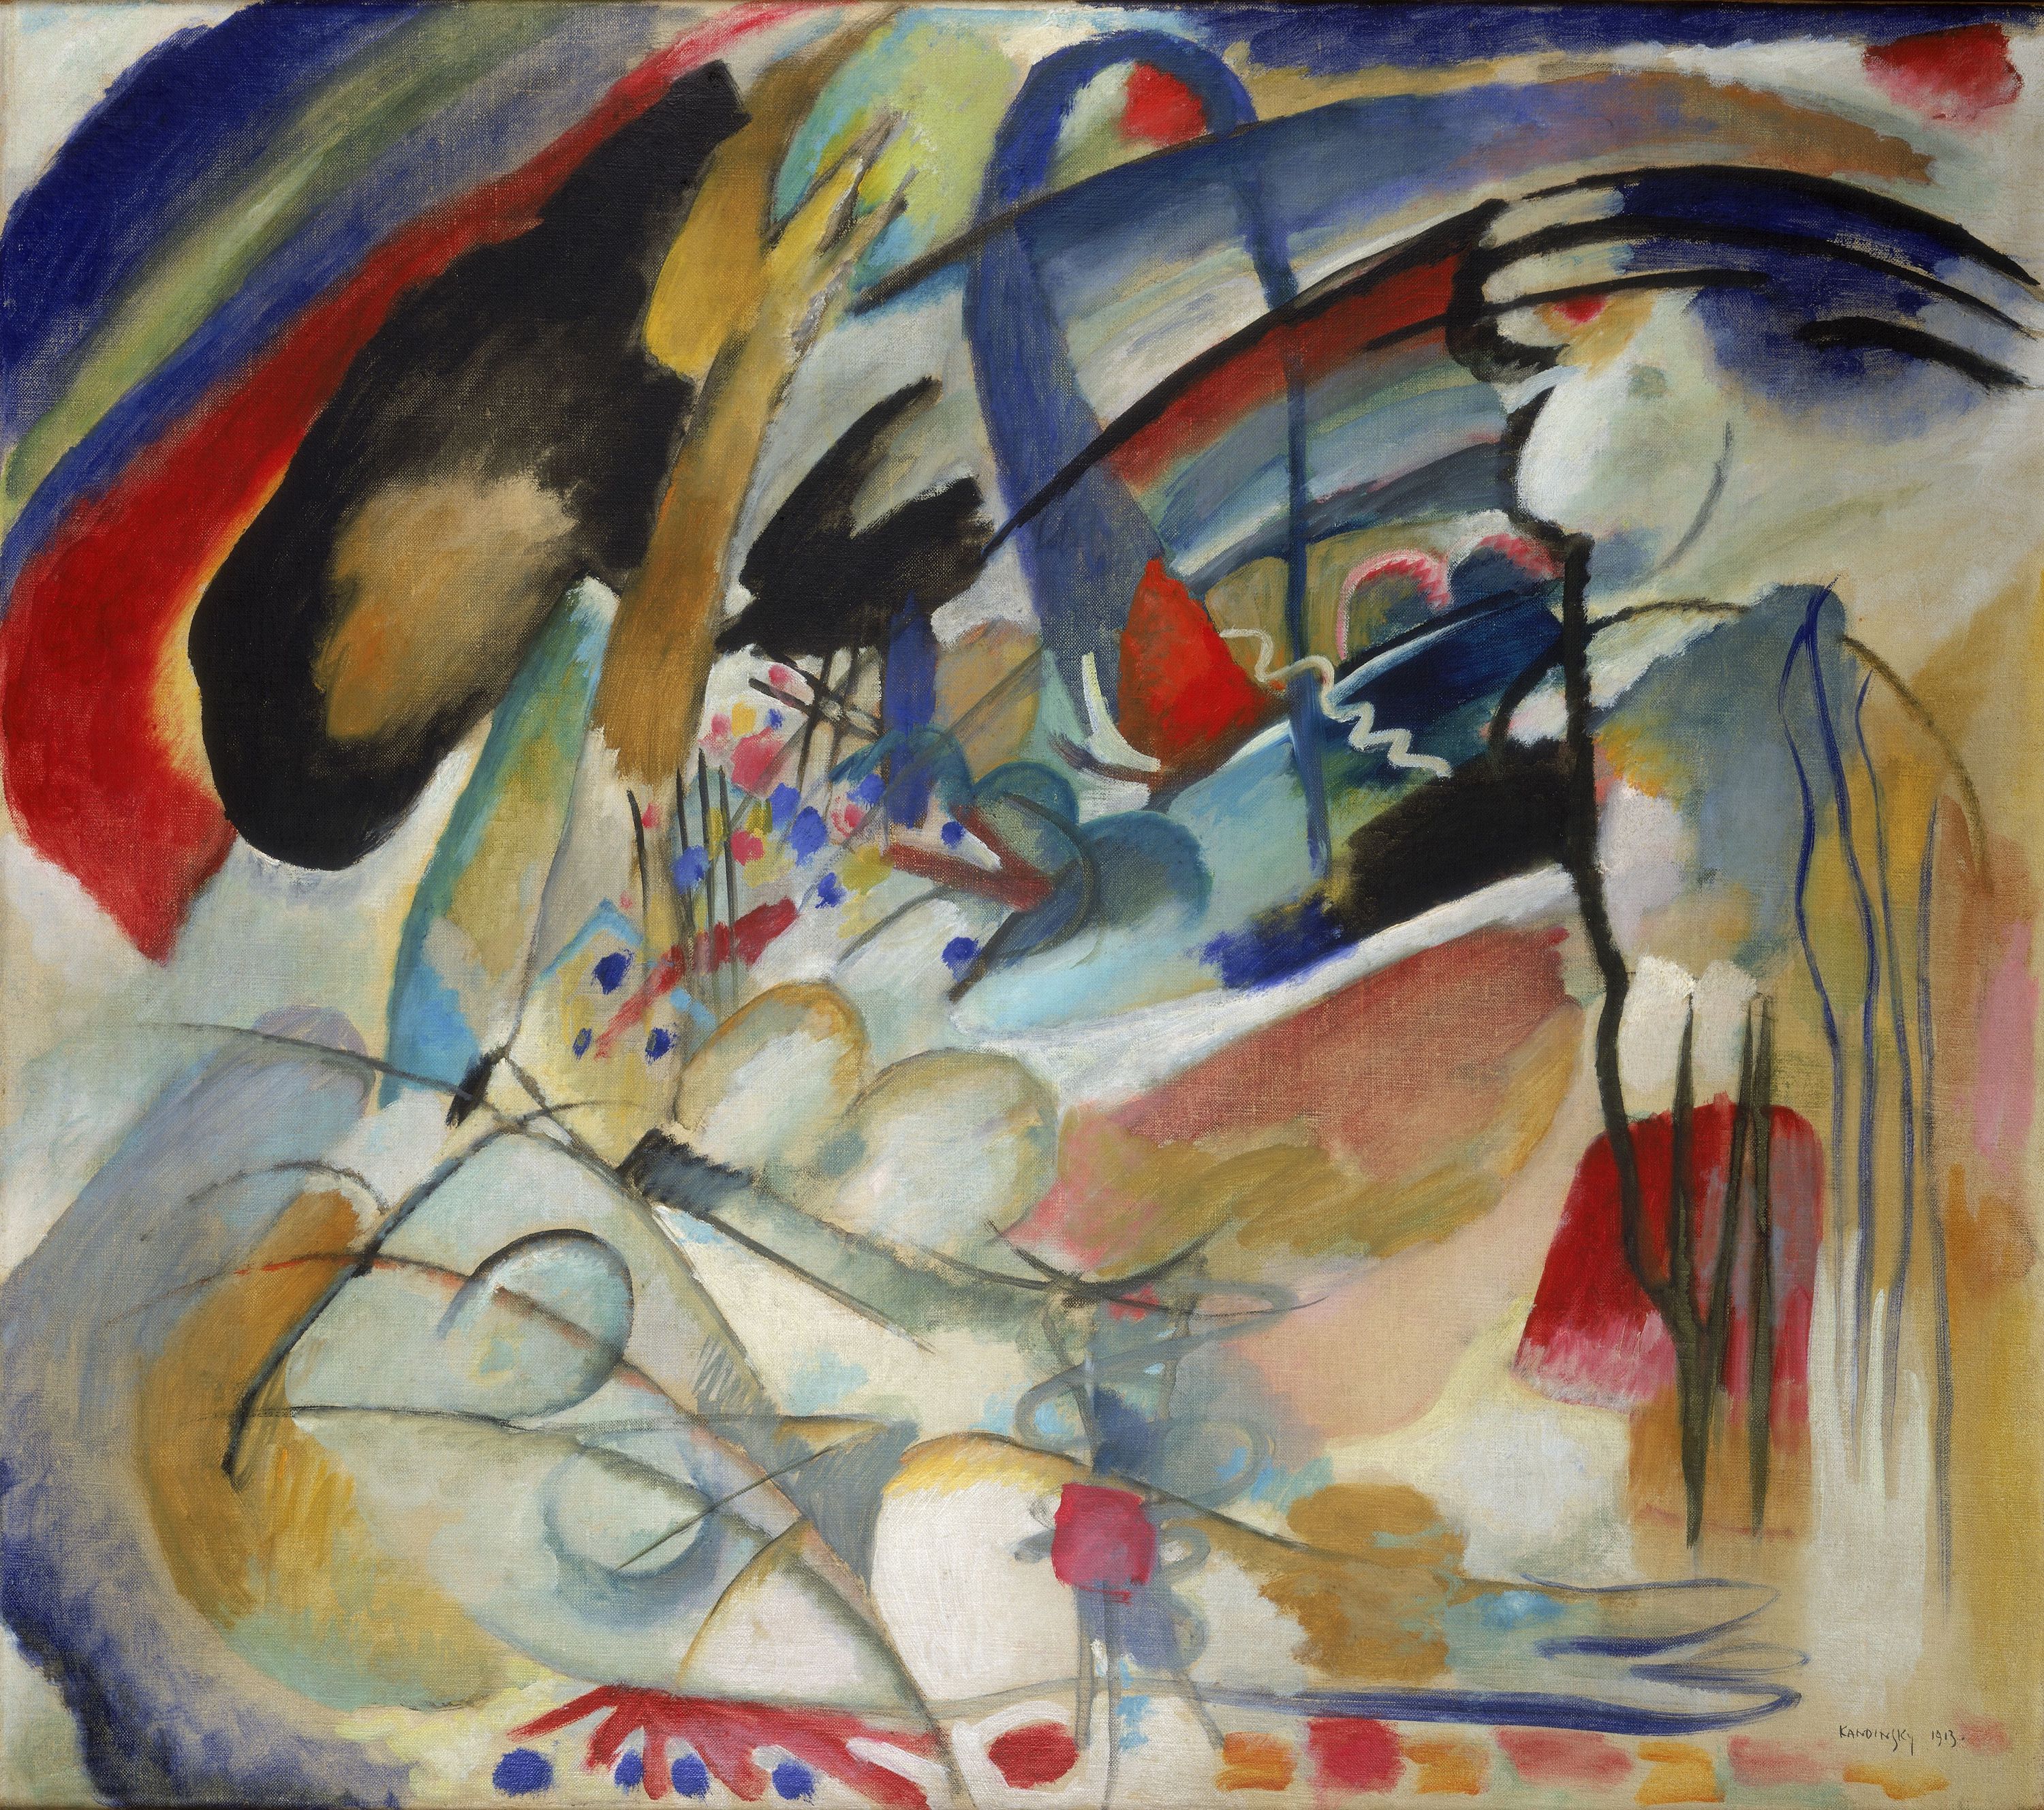 インプロヴィゼーション33（オリエントI） by Wassily Kandinsky - 1913年 - 88.5 x 100.5 cm 